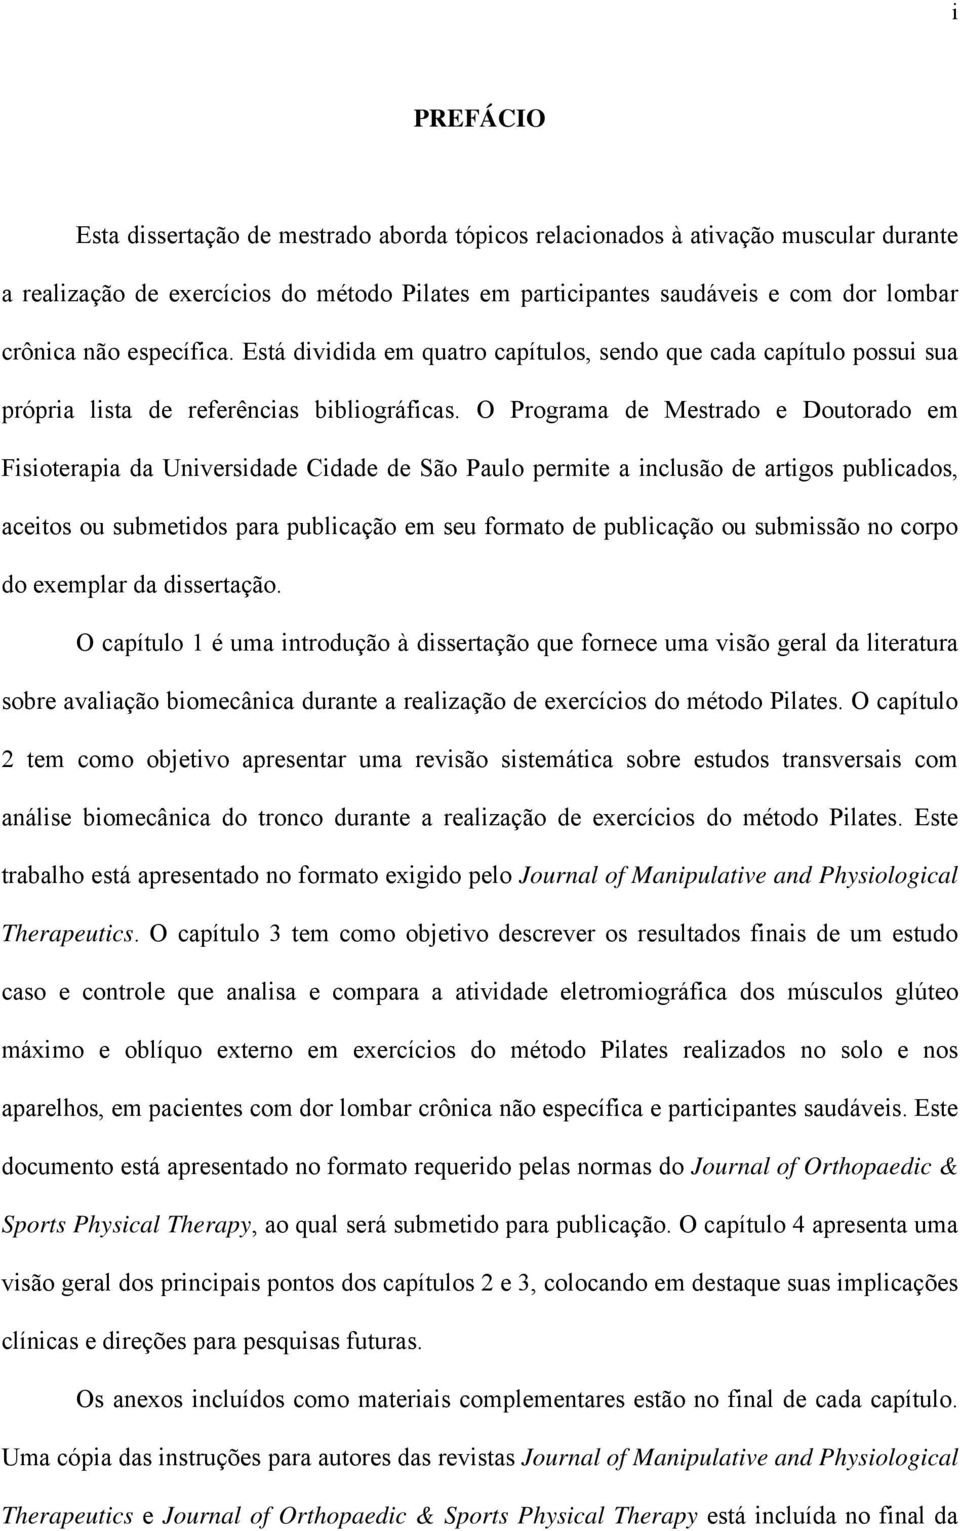 O Programa de Mestrado e Doutorado em Fisioterapia da Universidade Cidade de São Paulo permite a inclusão de artigos publicados, aceitos ou submetidos para publicação em seu formato de publicação ou